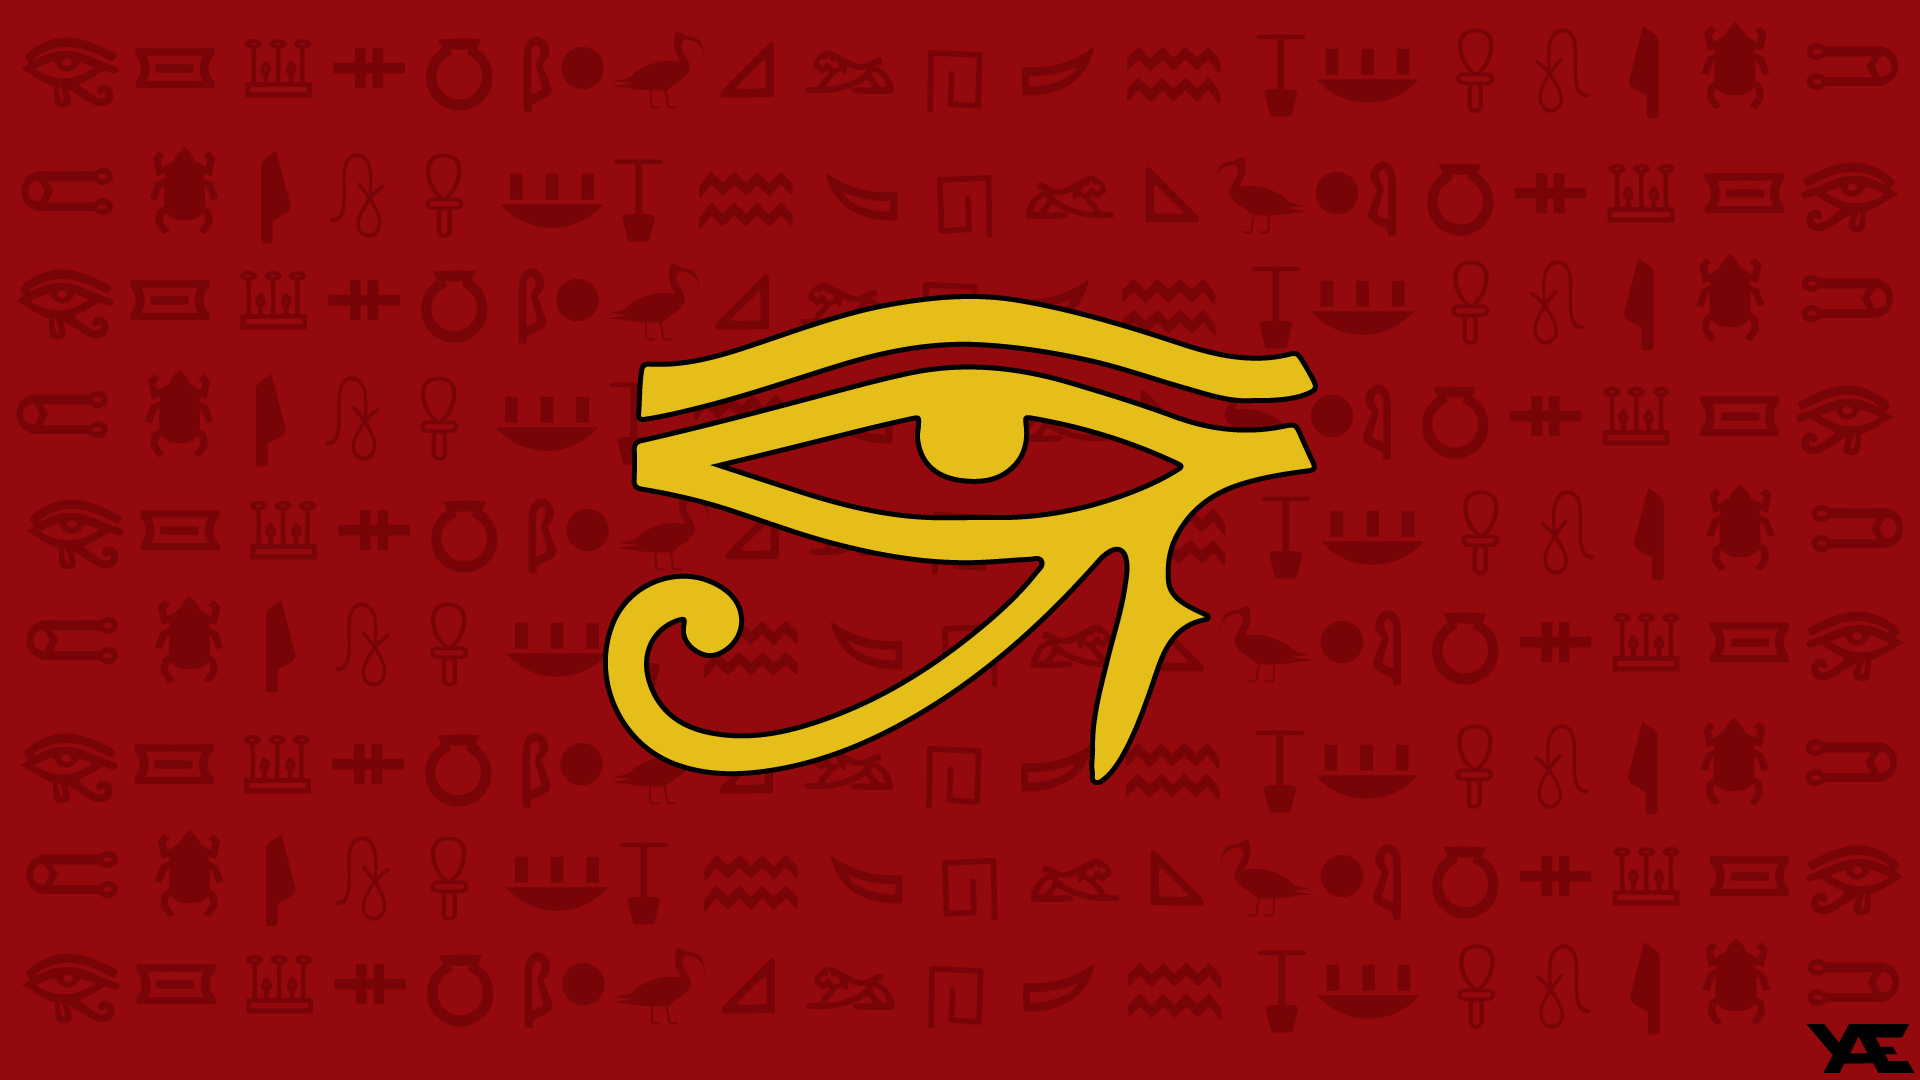 奇 幻 Eye of Horus 高 清 壁 纸 桌 面 背 景.